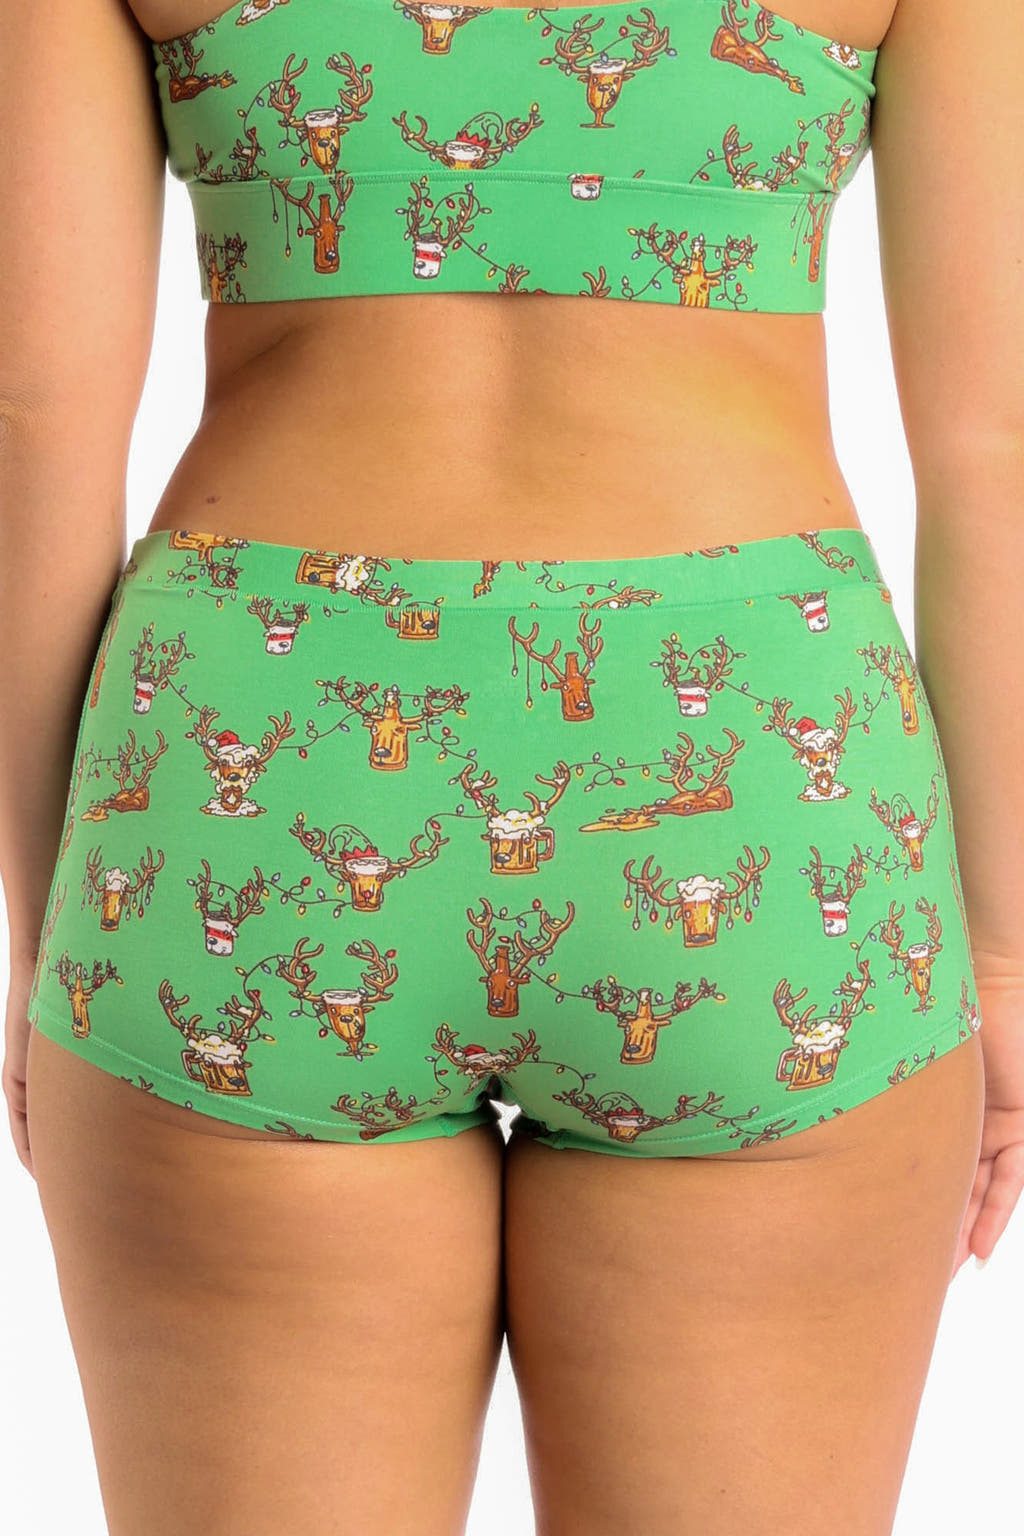 reindeer beer underwear